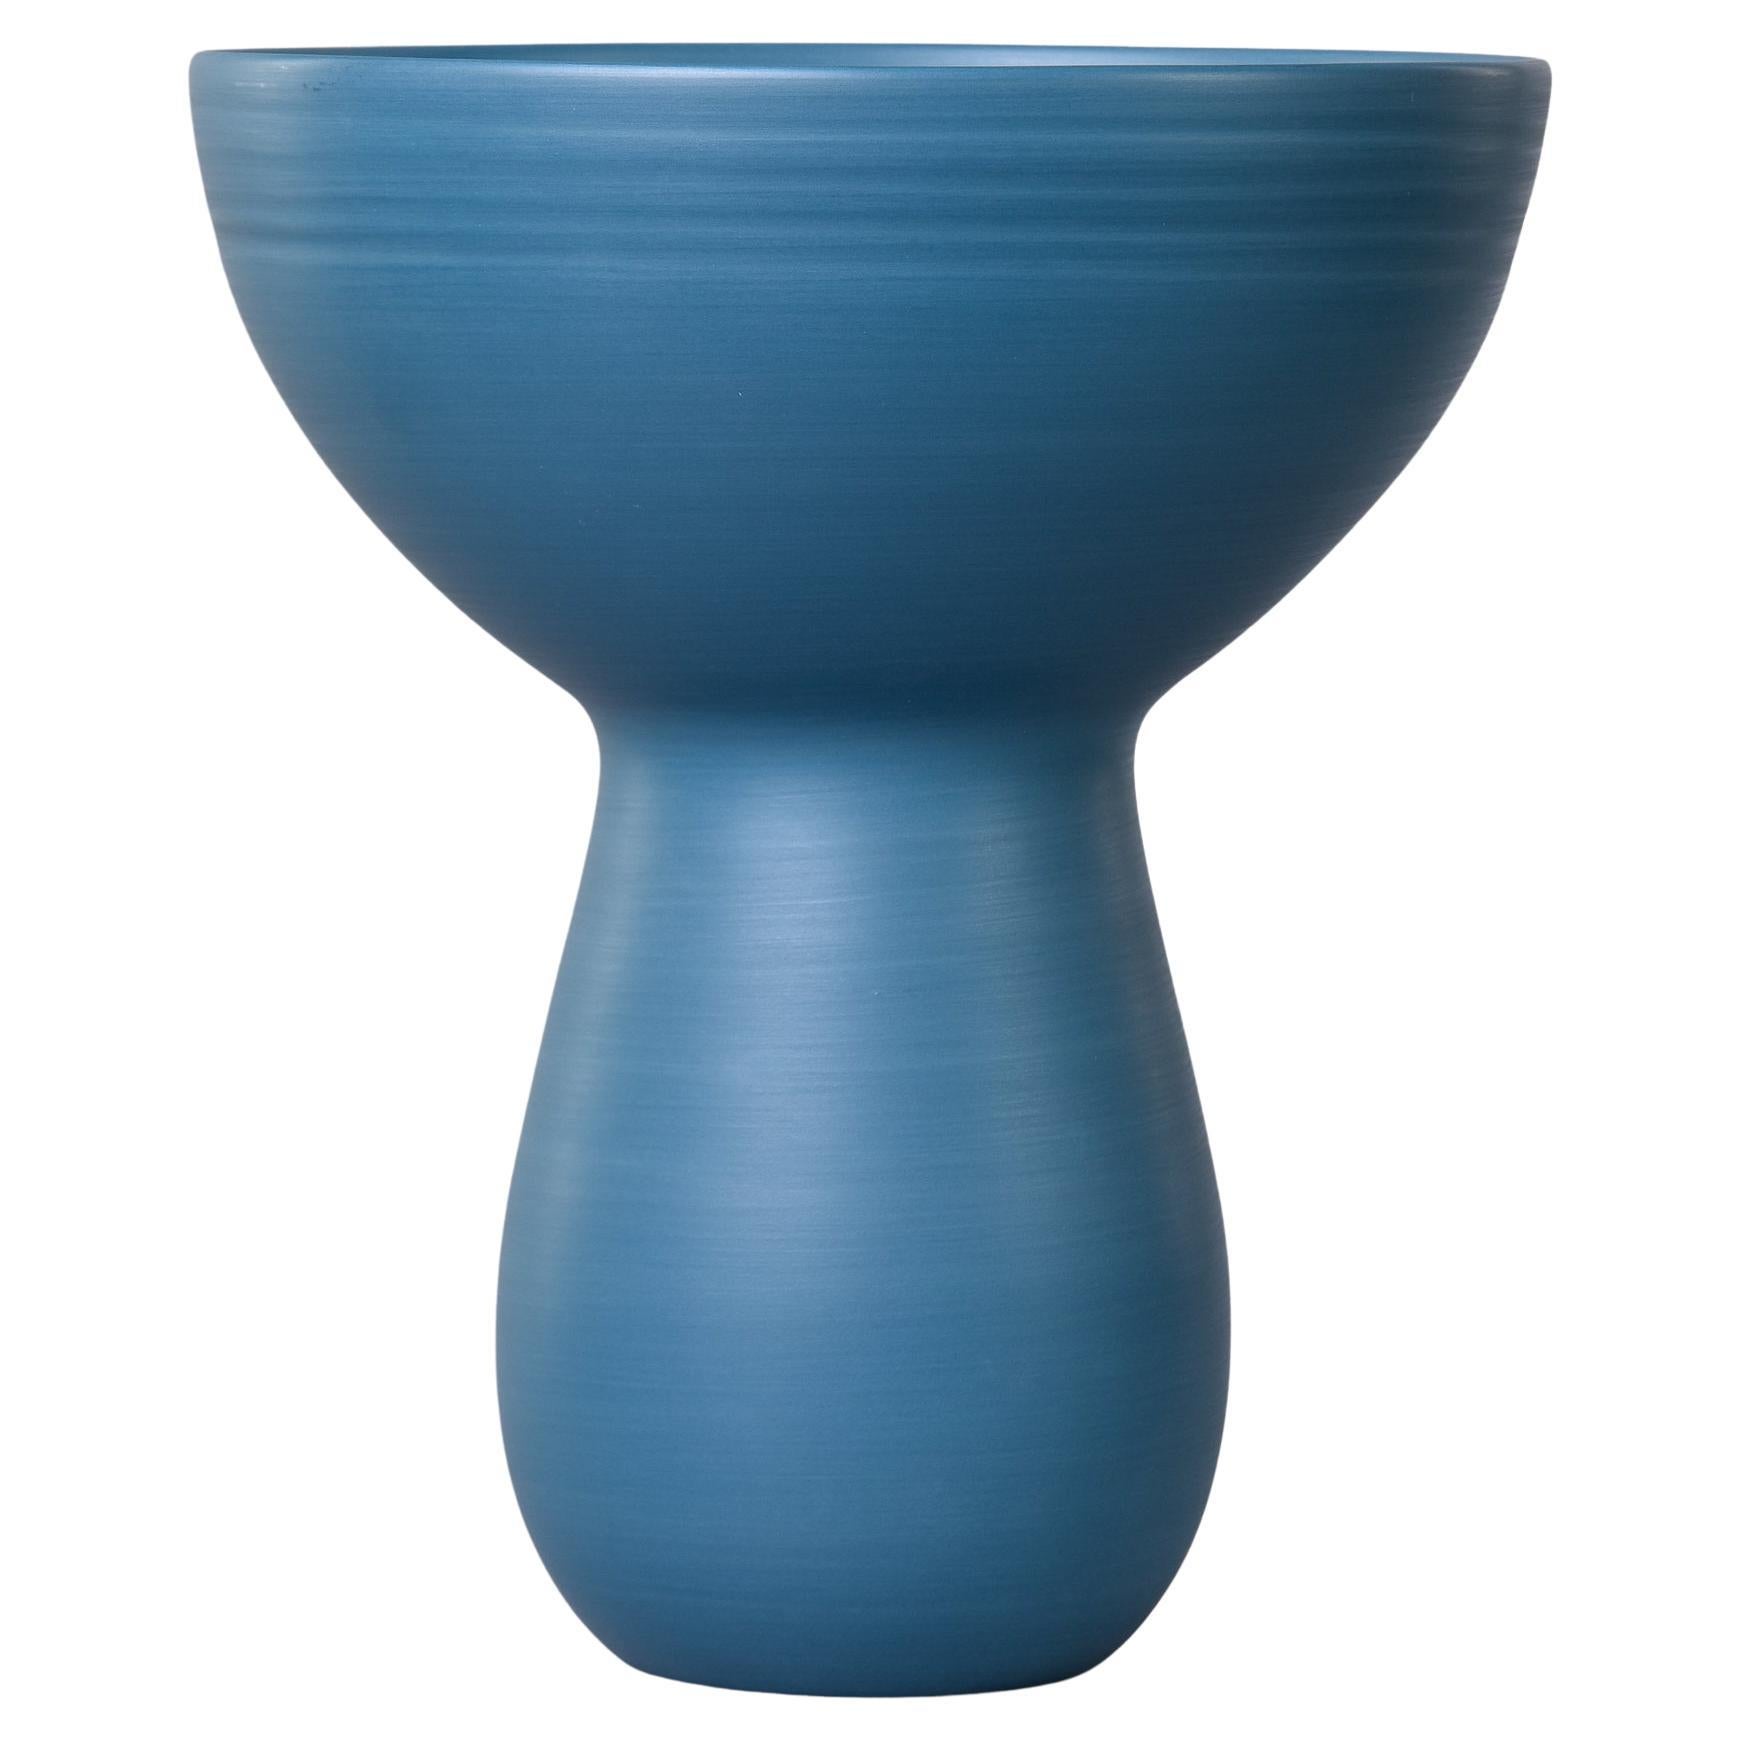 Petit vase bouquet Rina Menardi en bleu sarcelle